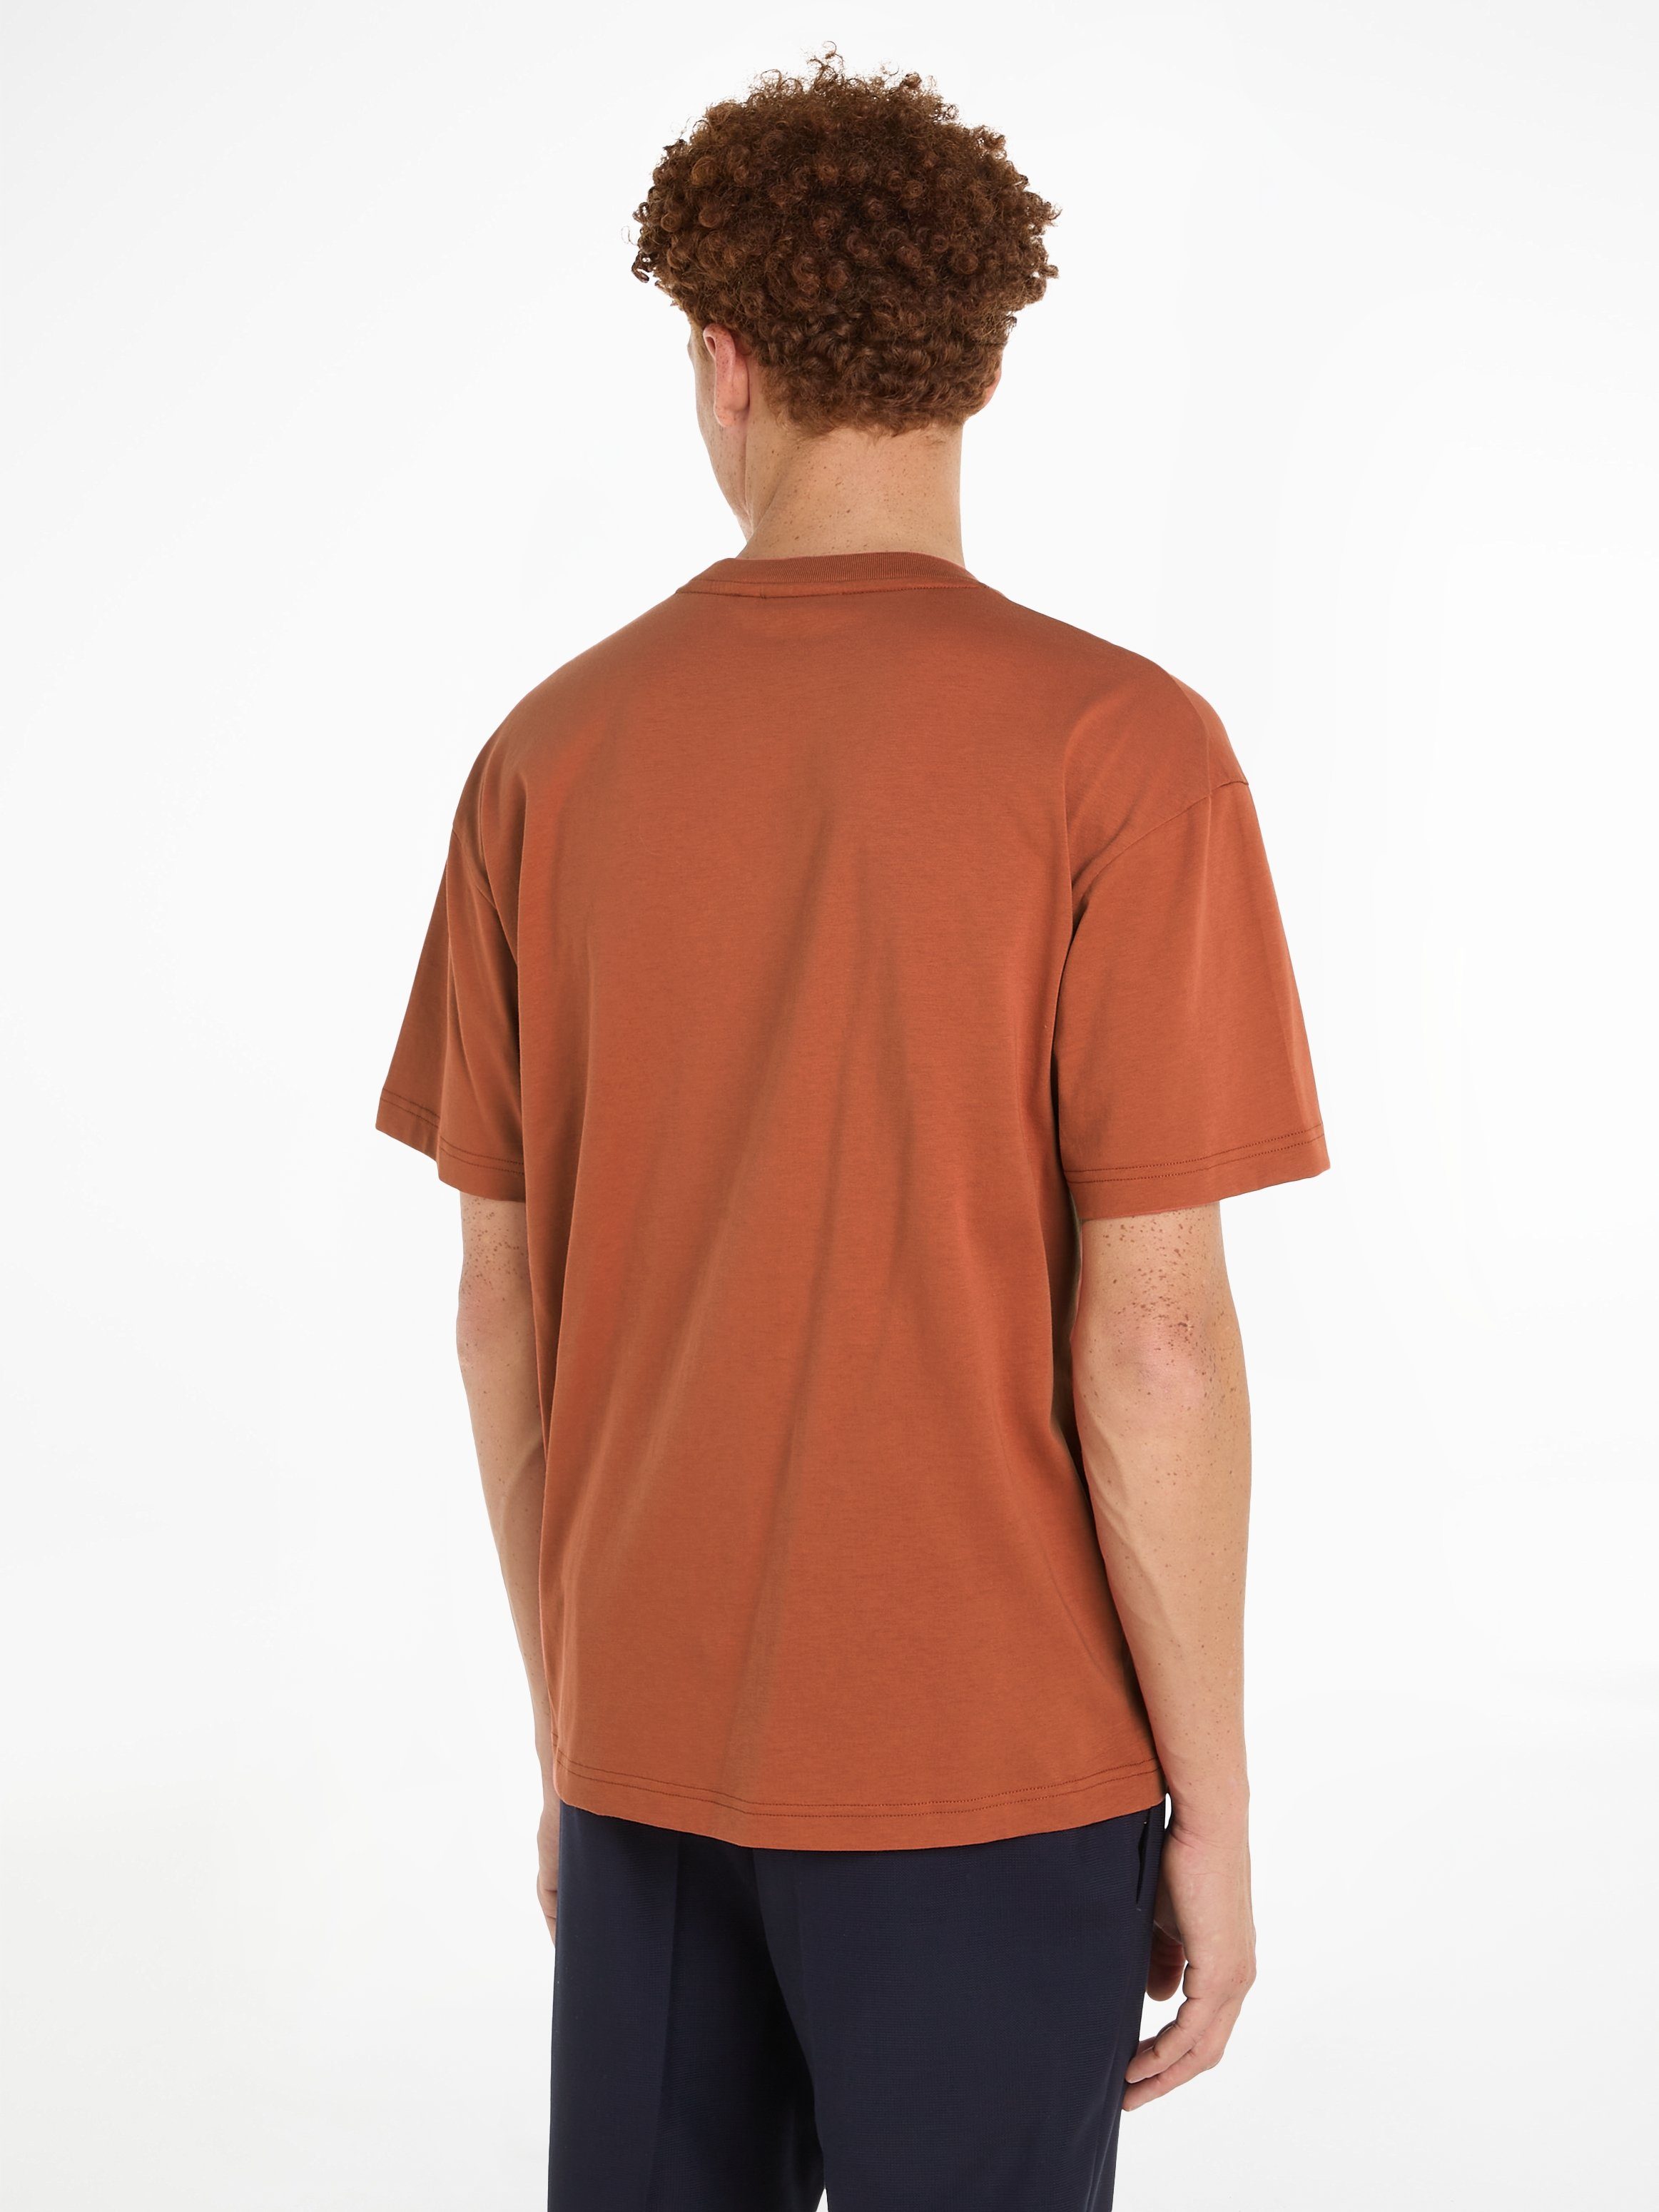 Calvin Klein T-Shirt HERO LOGO Copper COMFORT Markenlabel aufgedrucktem Sun T-SHIRT mit